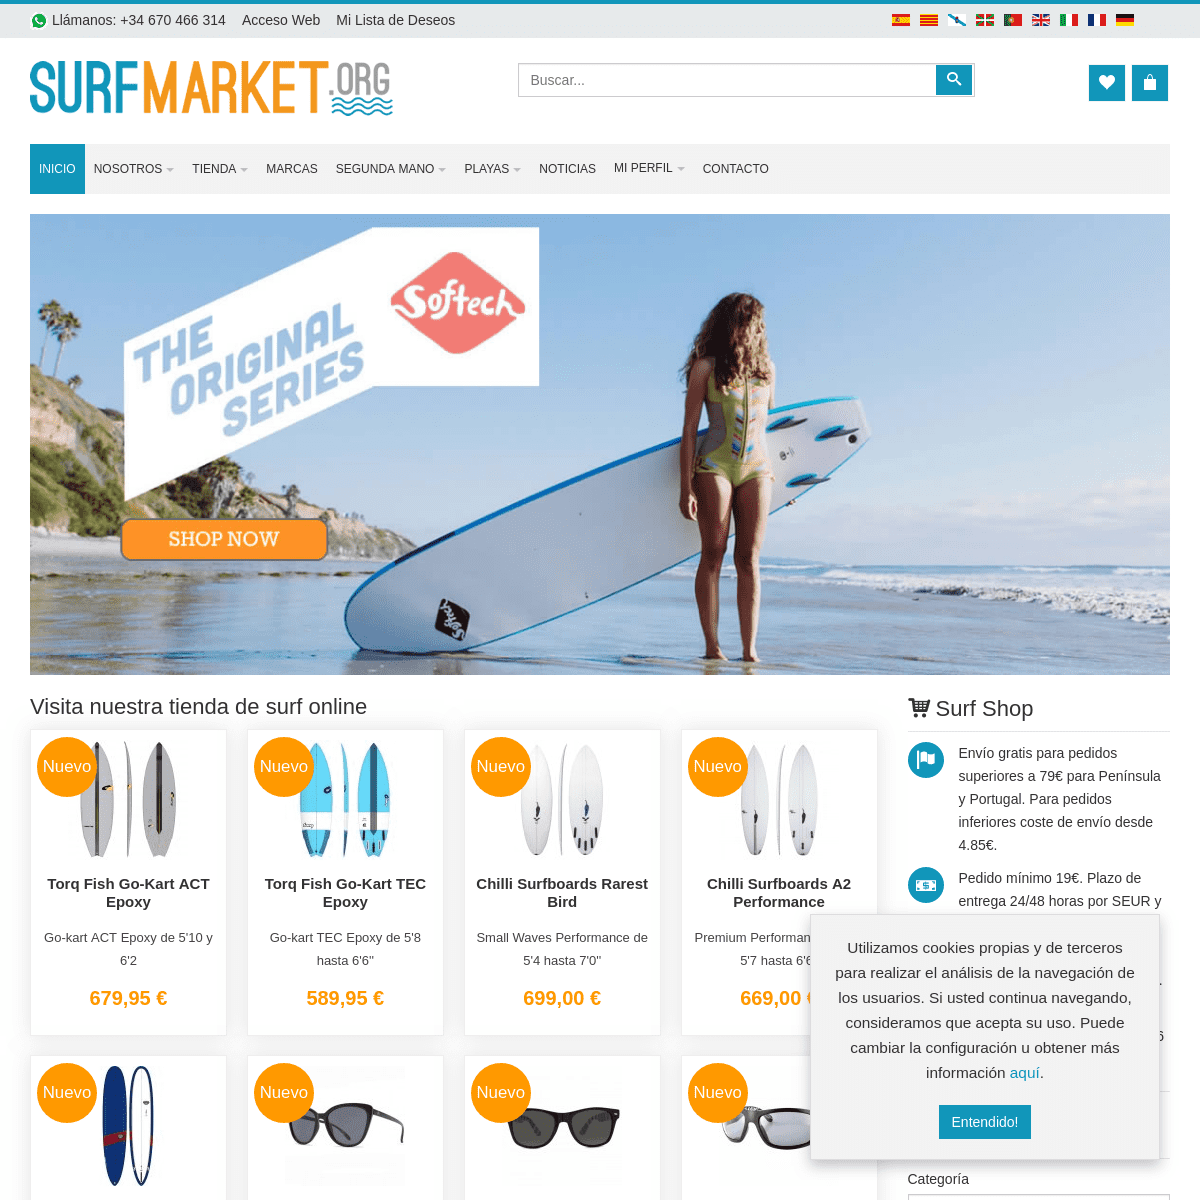 Tienda de Surf: tablas nuevas, segunda mano, neoprenos y mucho más...